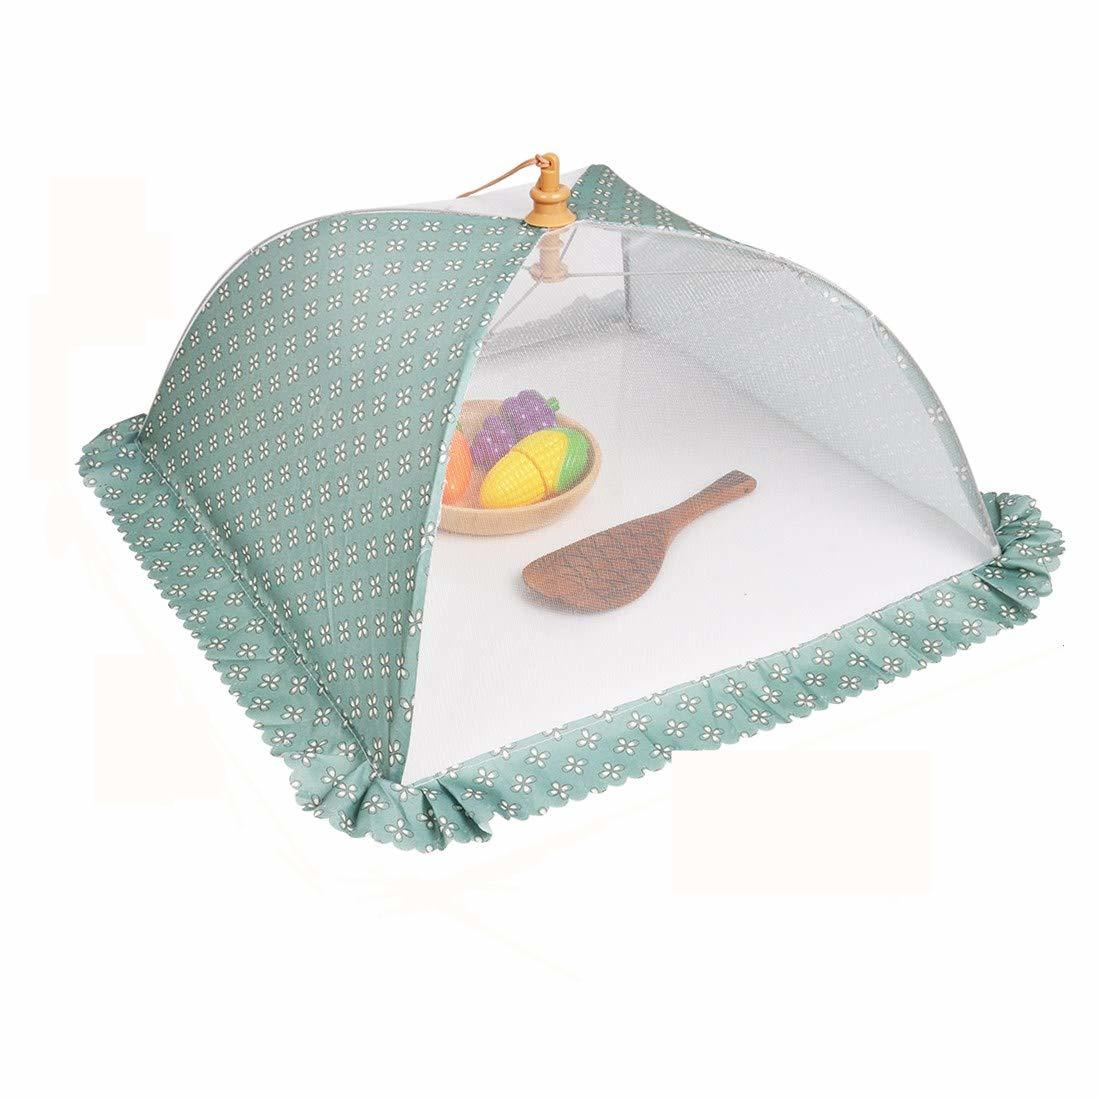 食卓カバー キッチンパラソル DEWEL フードカバー キッチンパラソル 3色あり 洗える 洋風 折り畳み式 正方形 埃よけ 虫よけ